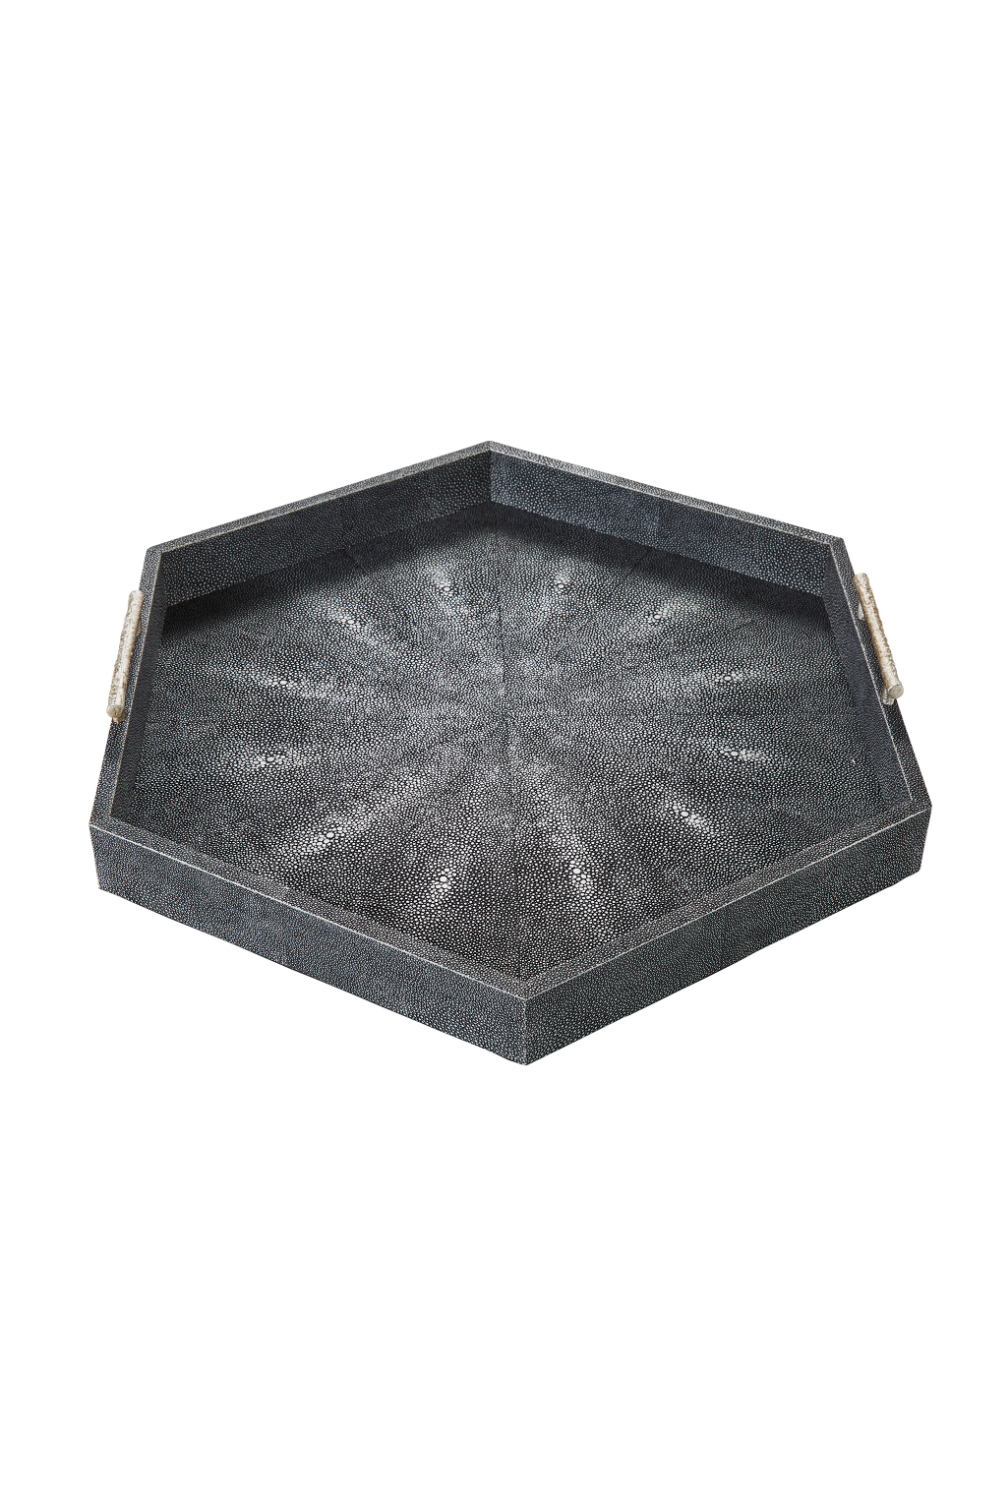 Gray Shagreen Hexagonal Tray | Andrew Martin Cosima | OROA